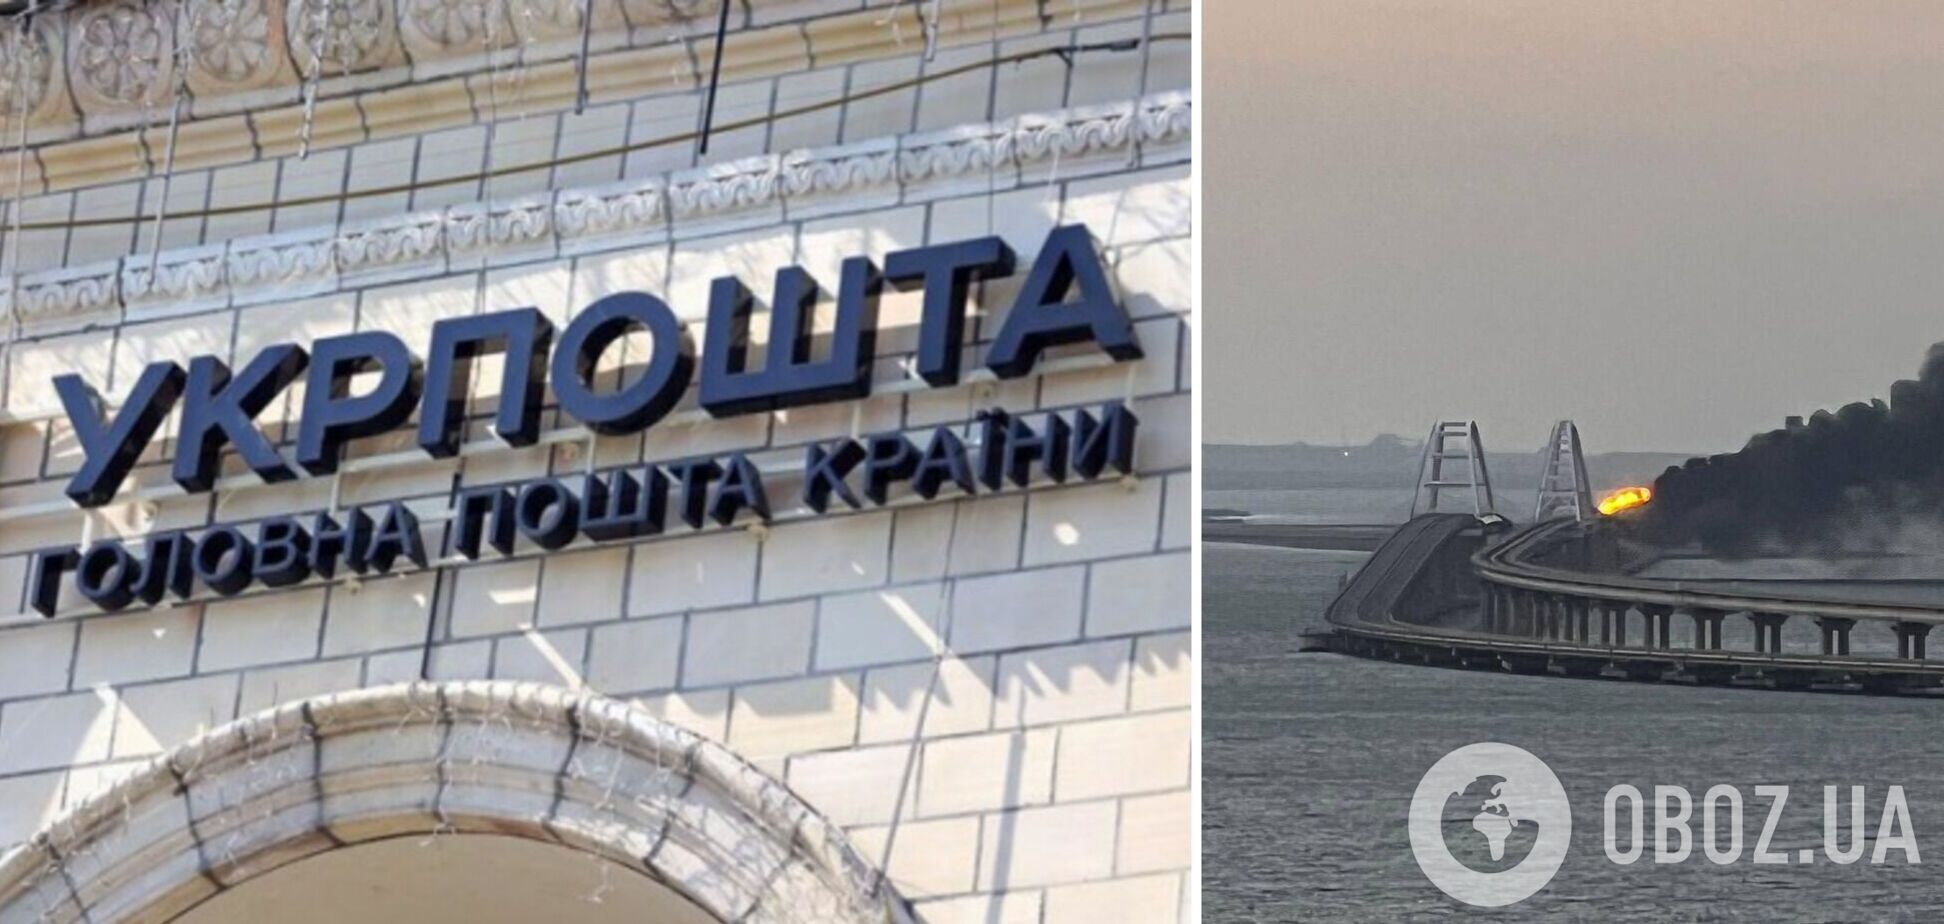 'Укрпошта' выпускает марку с Крымским мостом